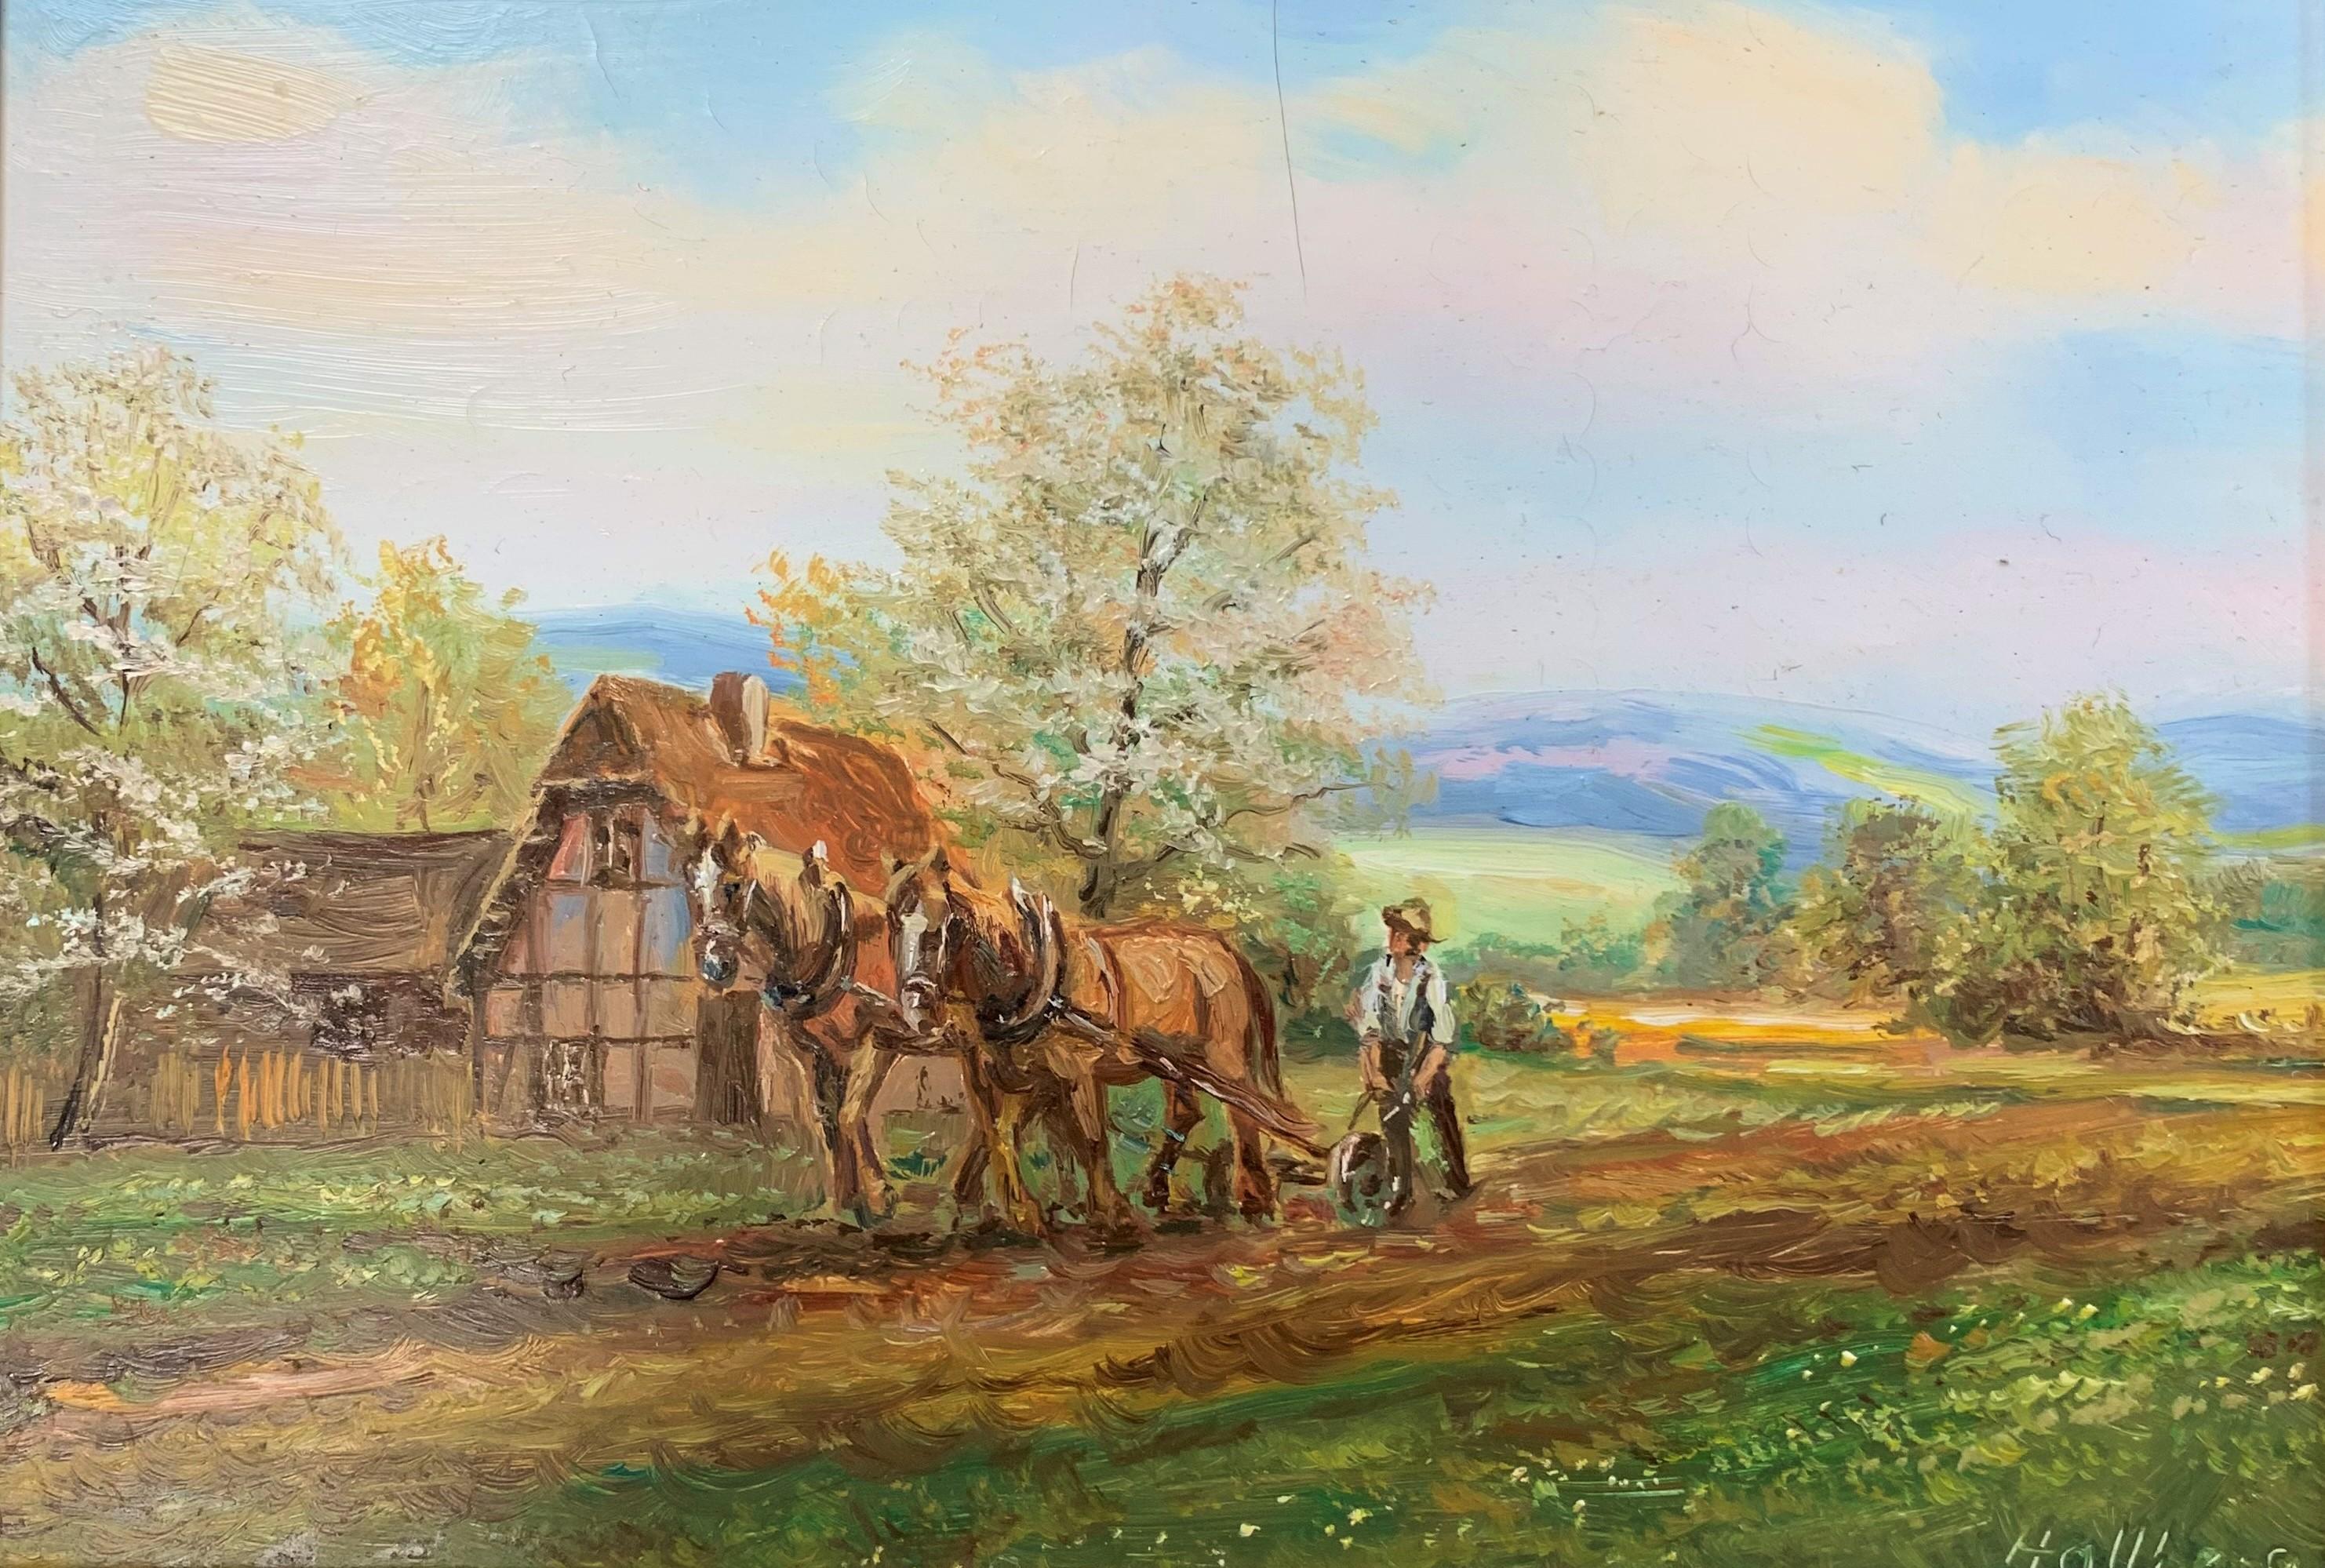 Le ploughman - Peinture réaliste autrichienne